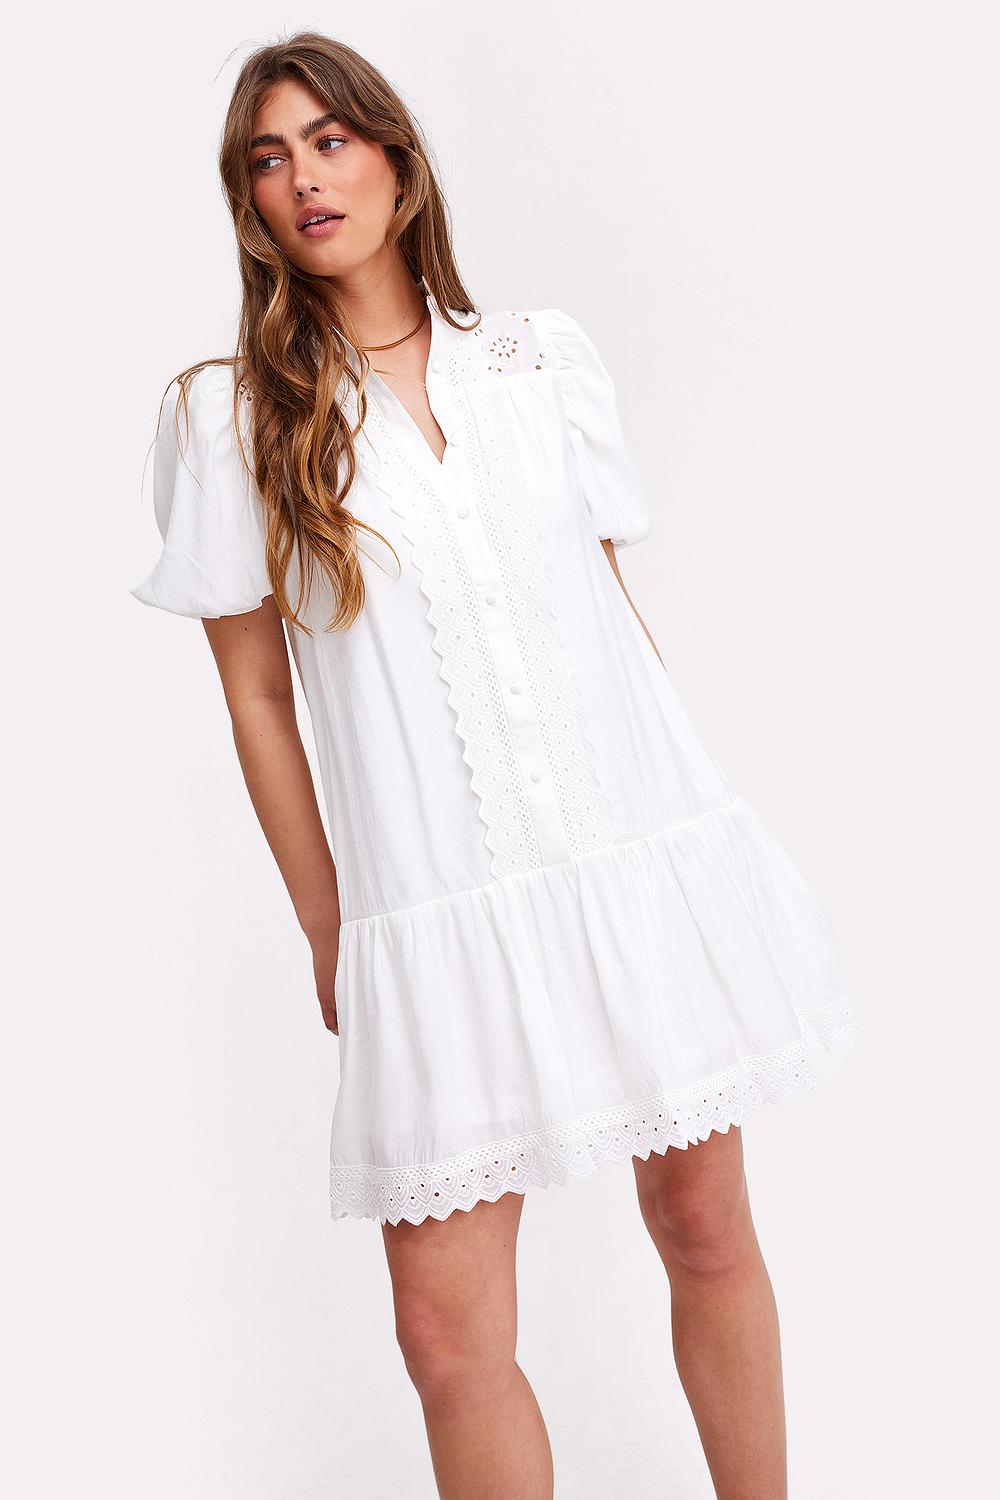 Witte geborduurde jurk